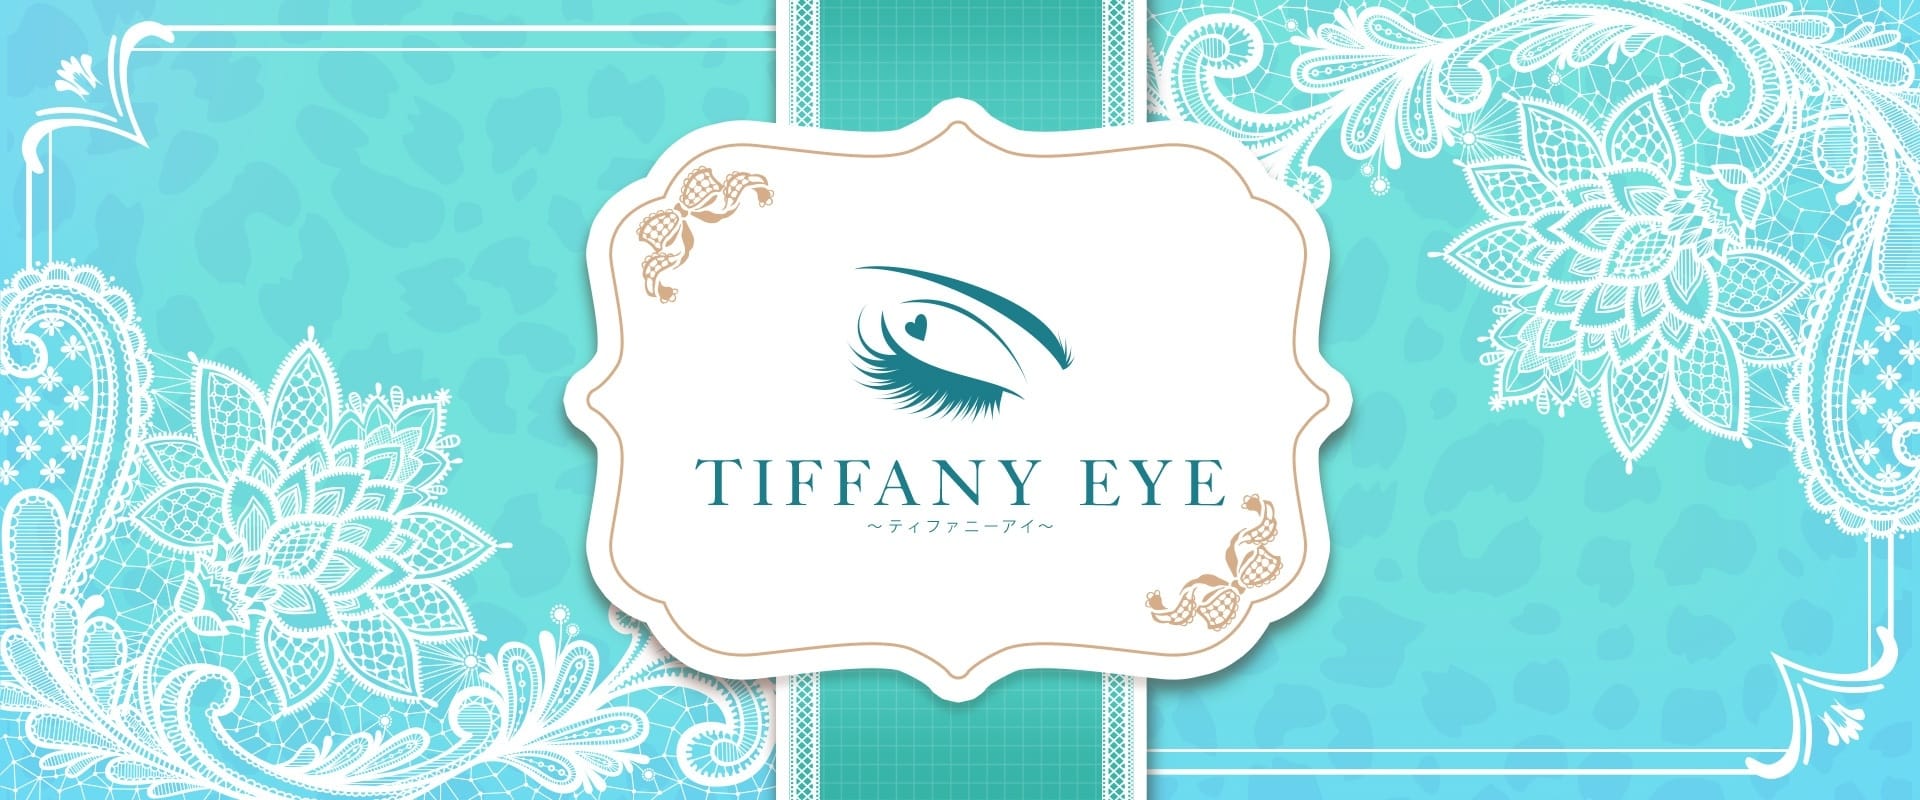 「Tiffany Eye ～ティファニーアイ～」の未経験歓迎アピール画像1枚目